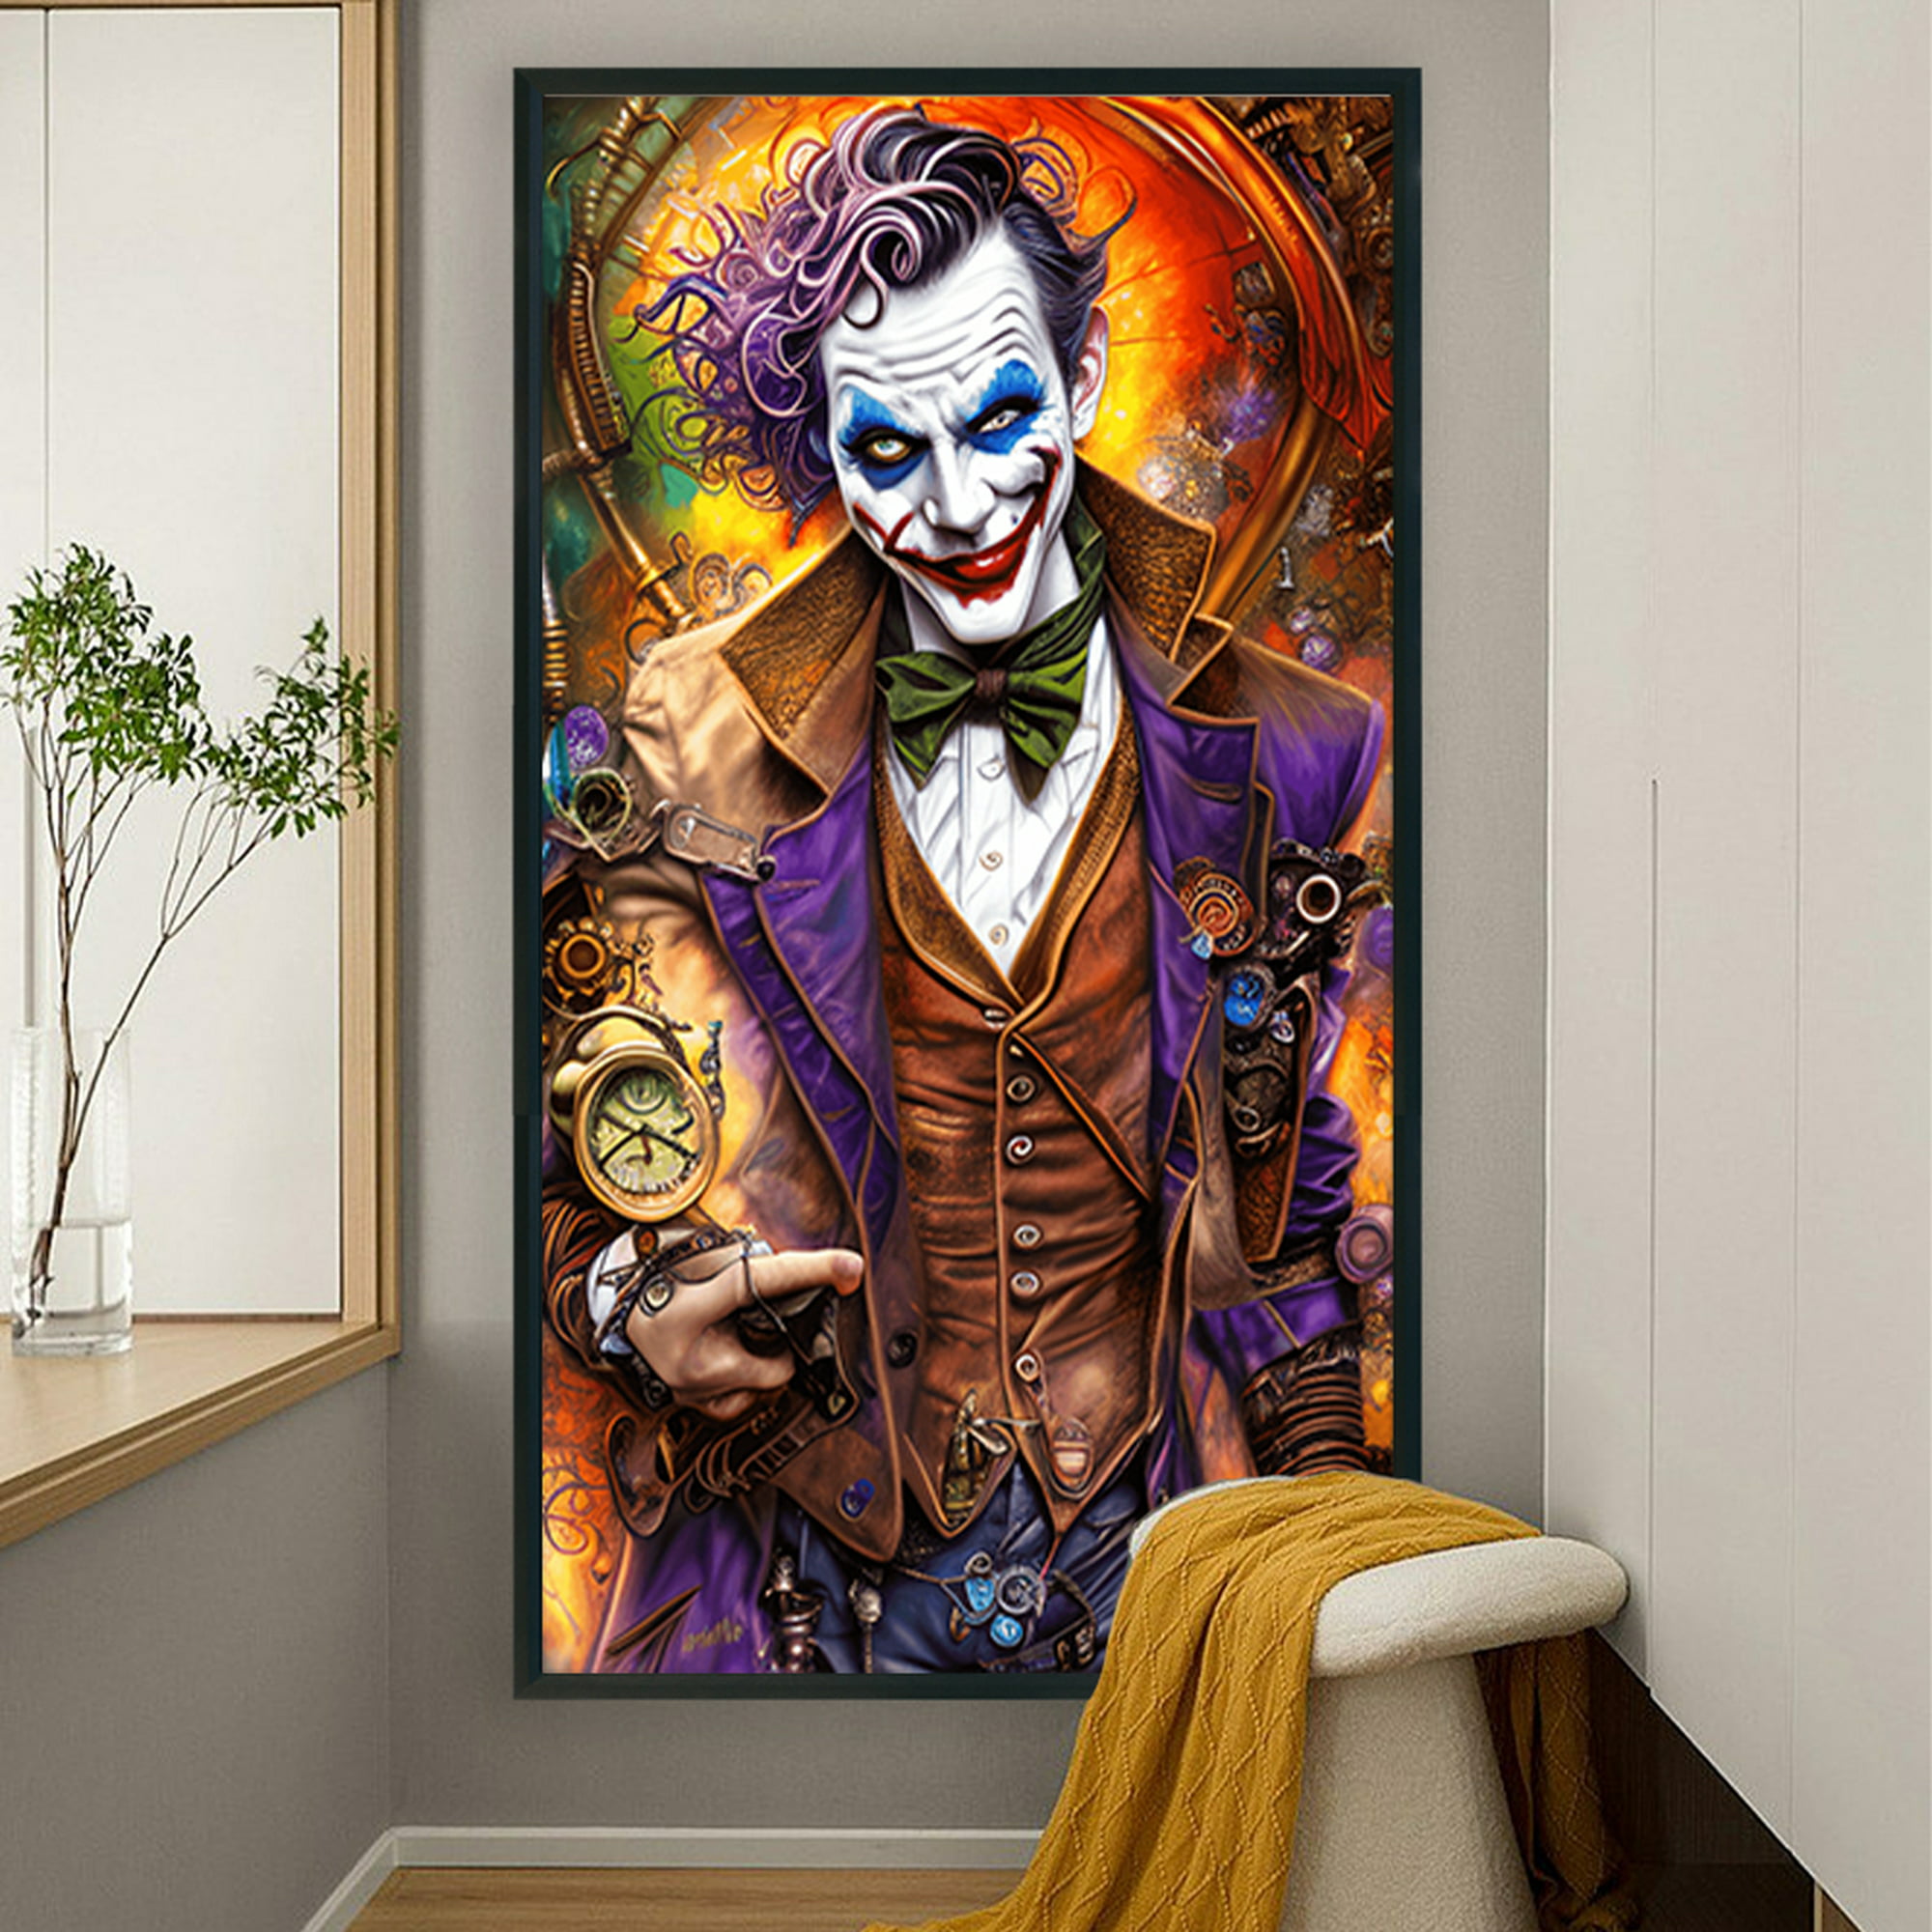 Cuadros Decorativos 5D DIY taladro redondo completo diamante pintura Joker  Kit decoración del hogar arte artesanal Wdftyju de costura negro 4 estilos